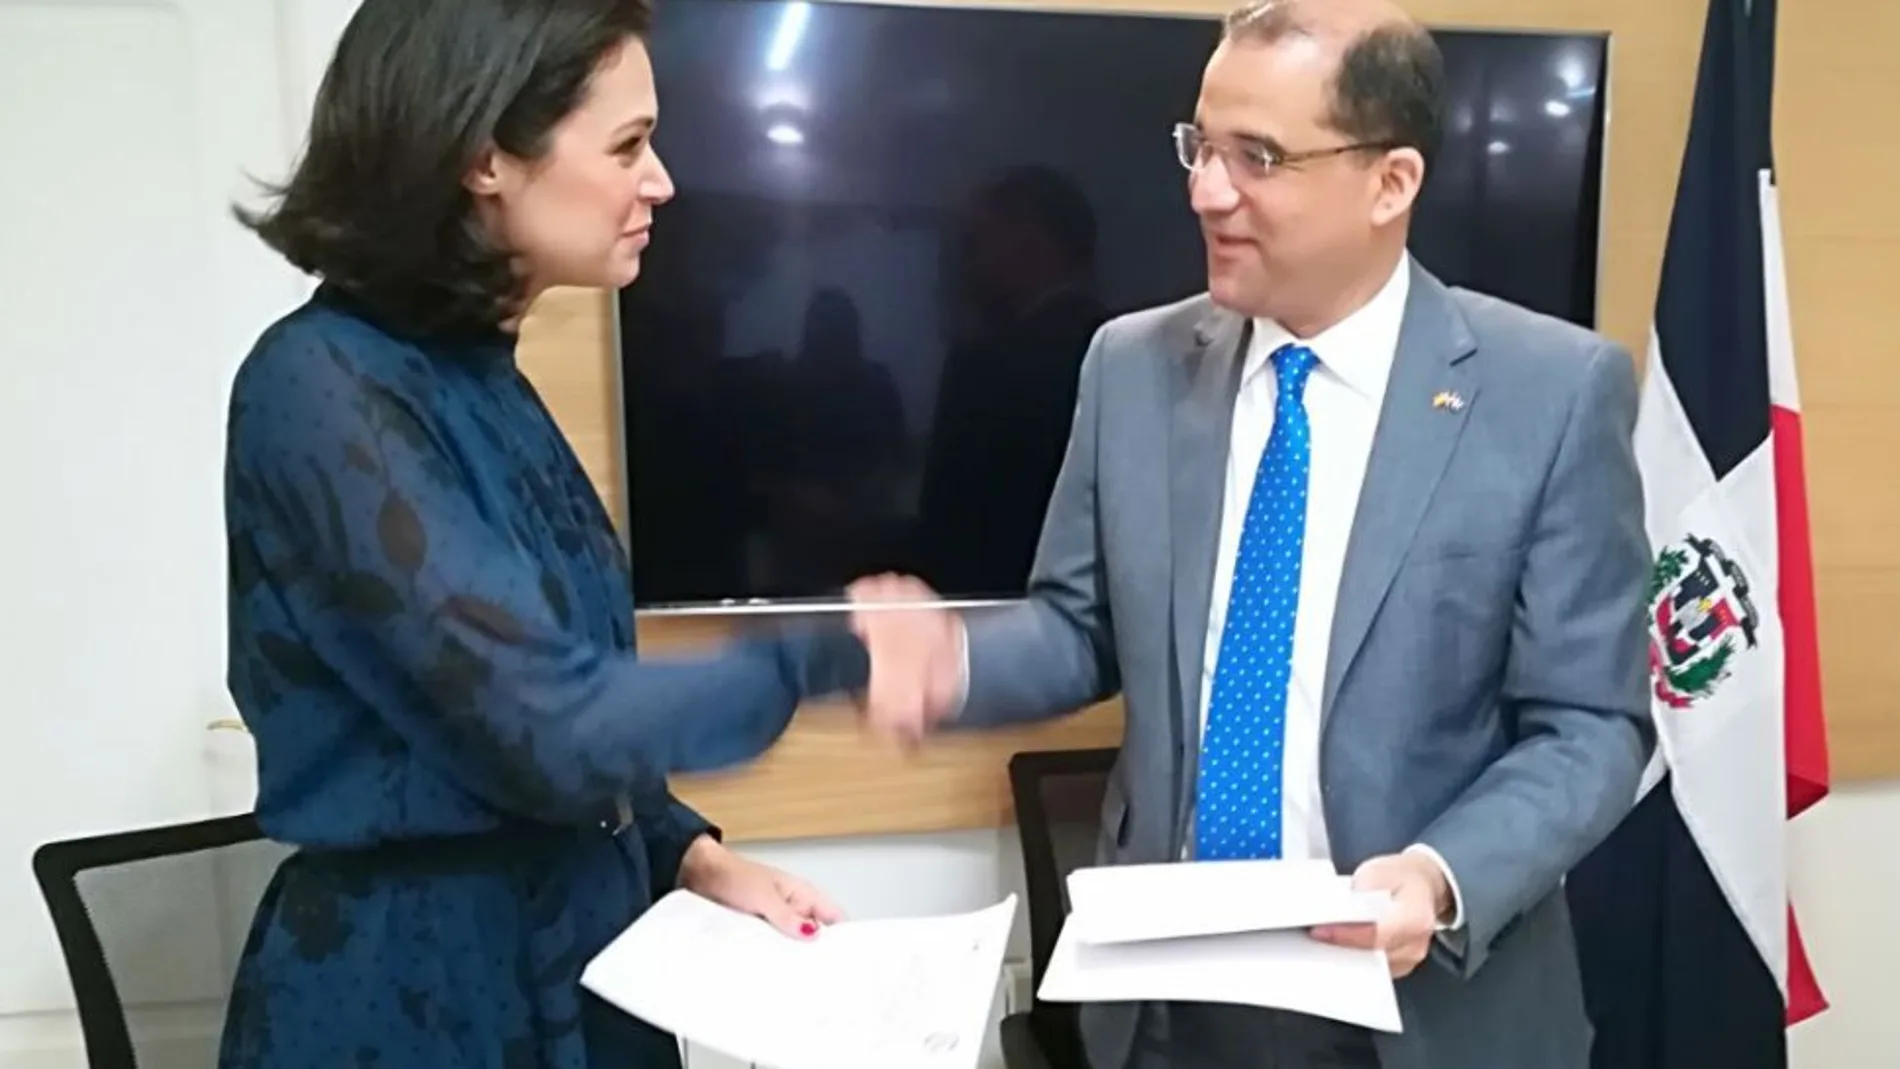 El embajador de la República Dominicana Olivo Rodríguez Huertas, (a la derecha) estrecha la mano de la presidenta del Patronato (FASM), María Guerrero Sanz, después de haber firmado el referido convenio.